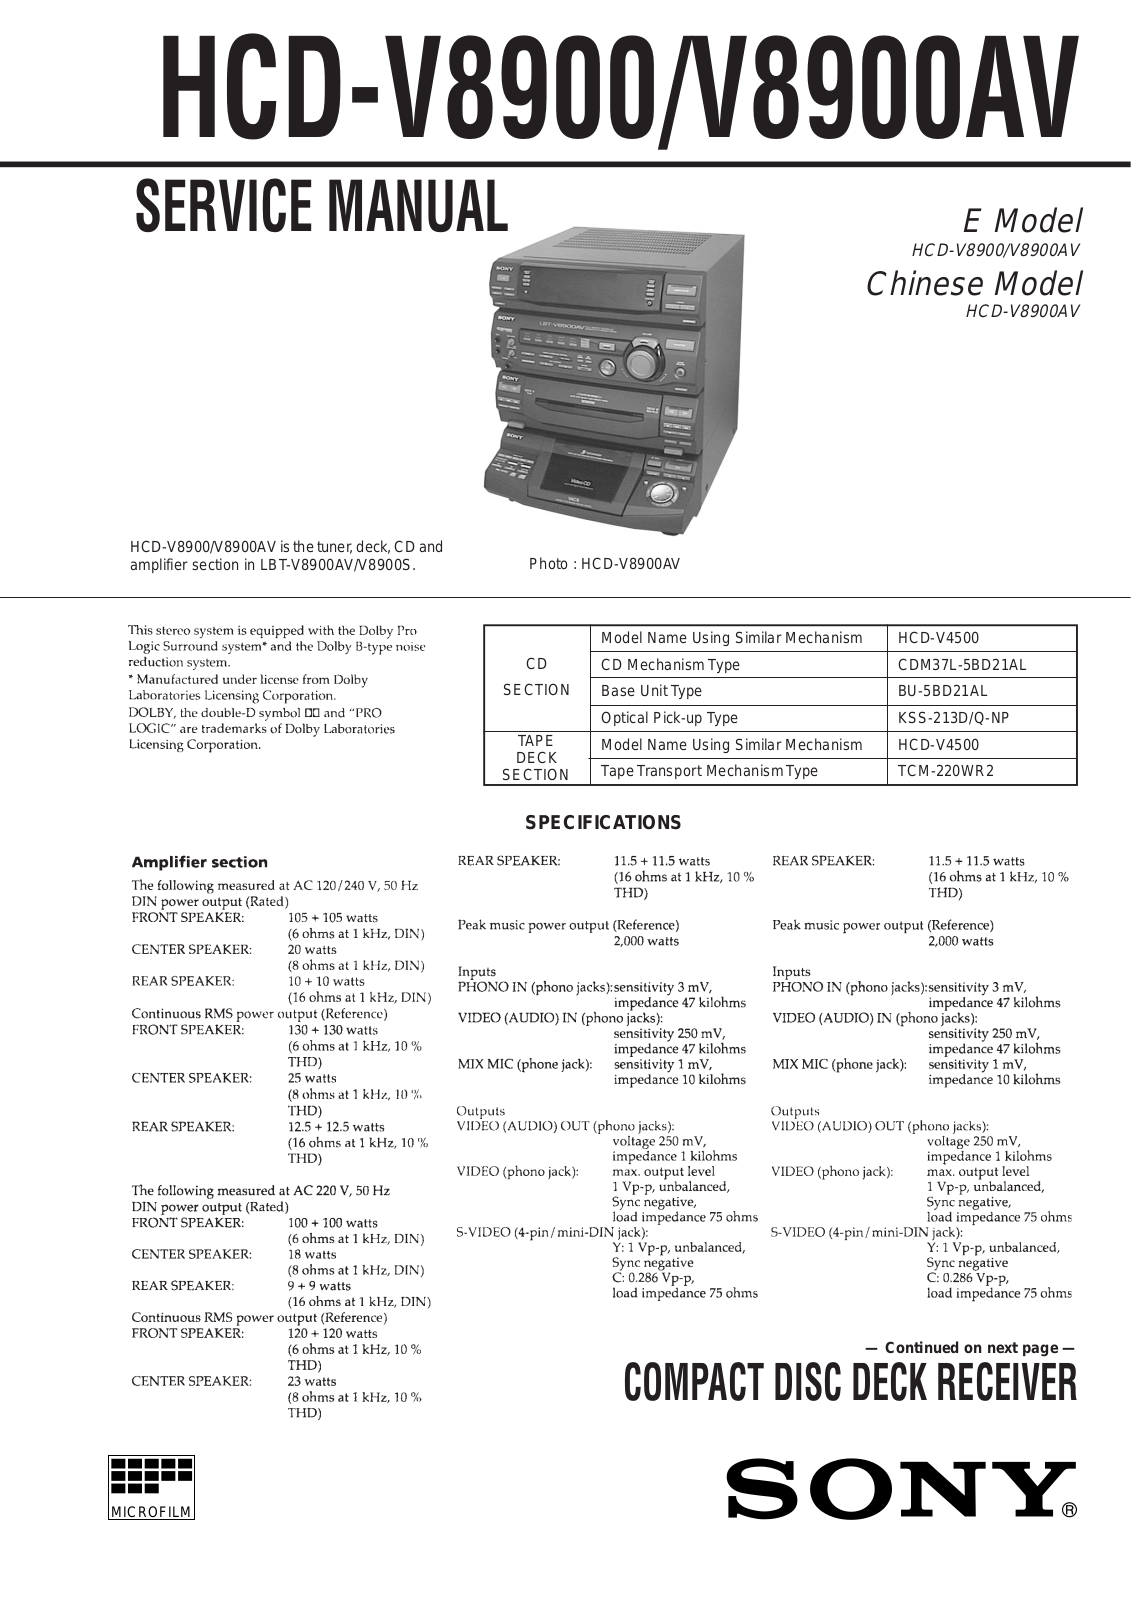 Sony HCD-V8900, HCD-V8900AV Service Manual